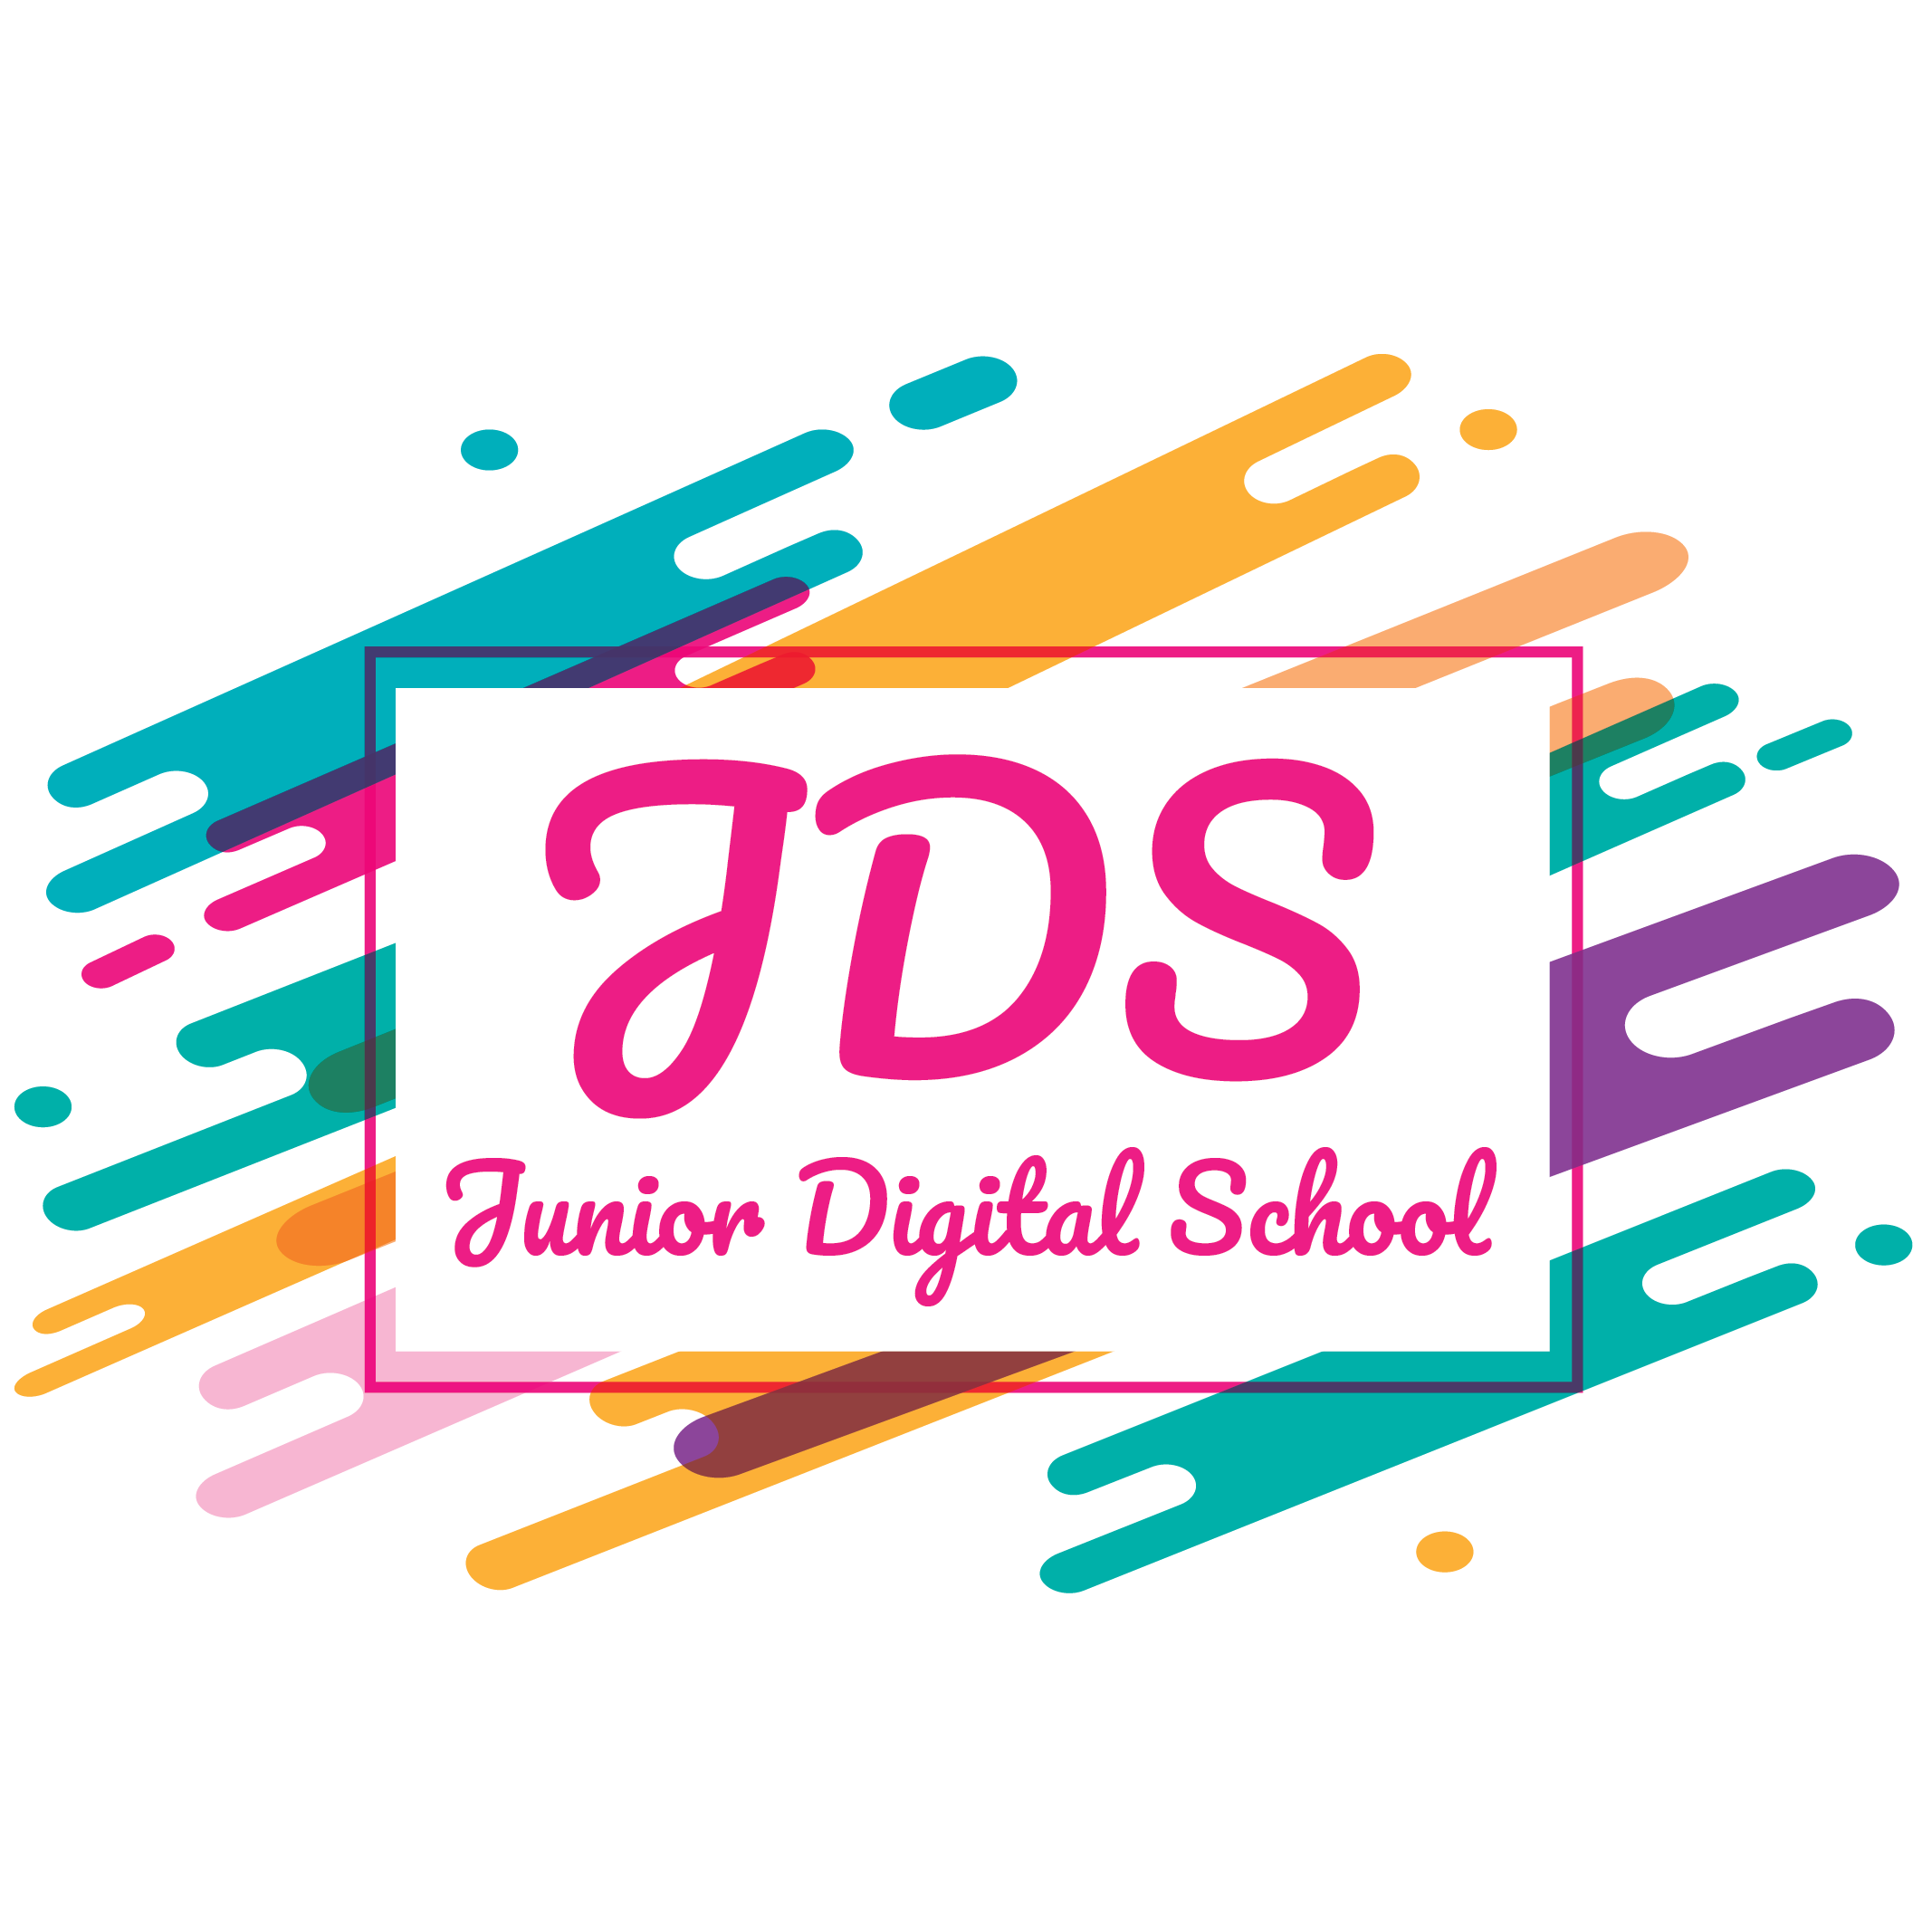 Junior Digital School